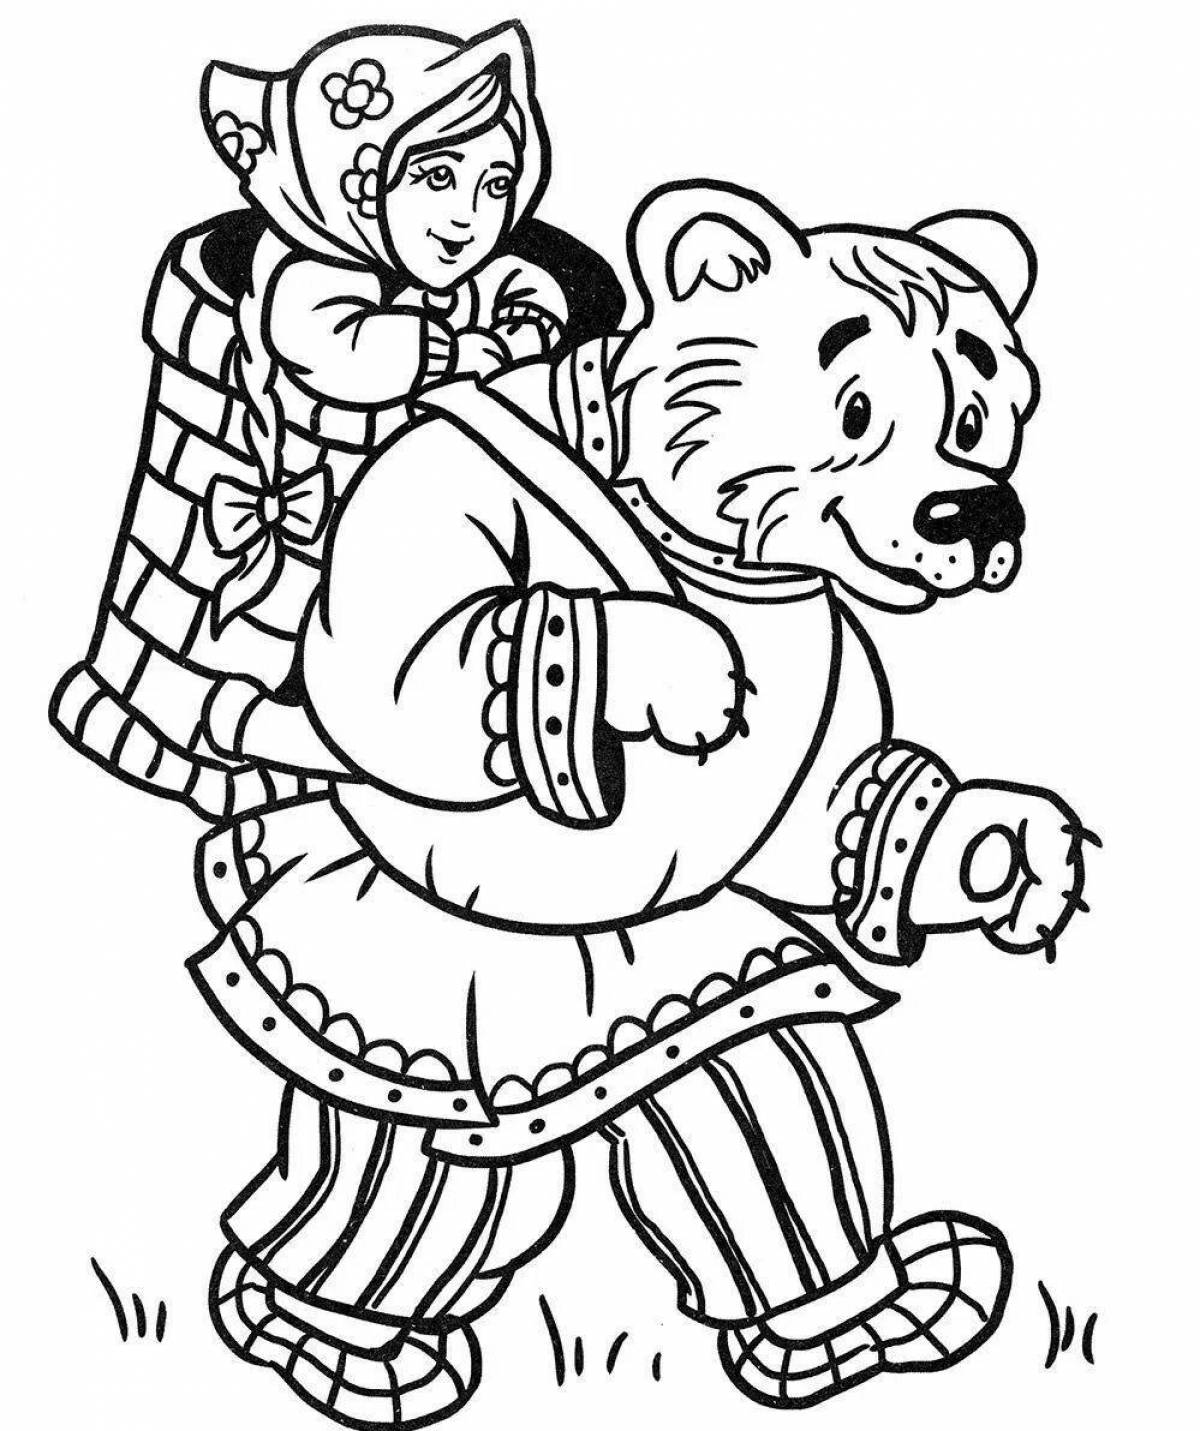 Masha and the bear fairy tale #8